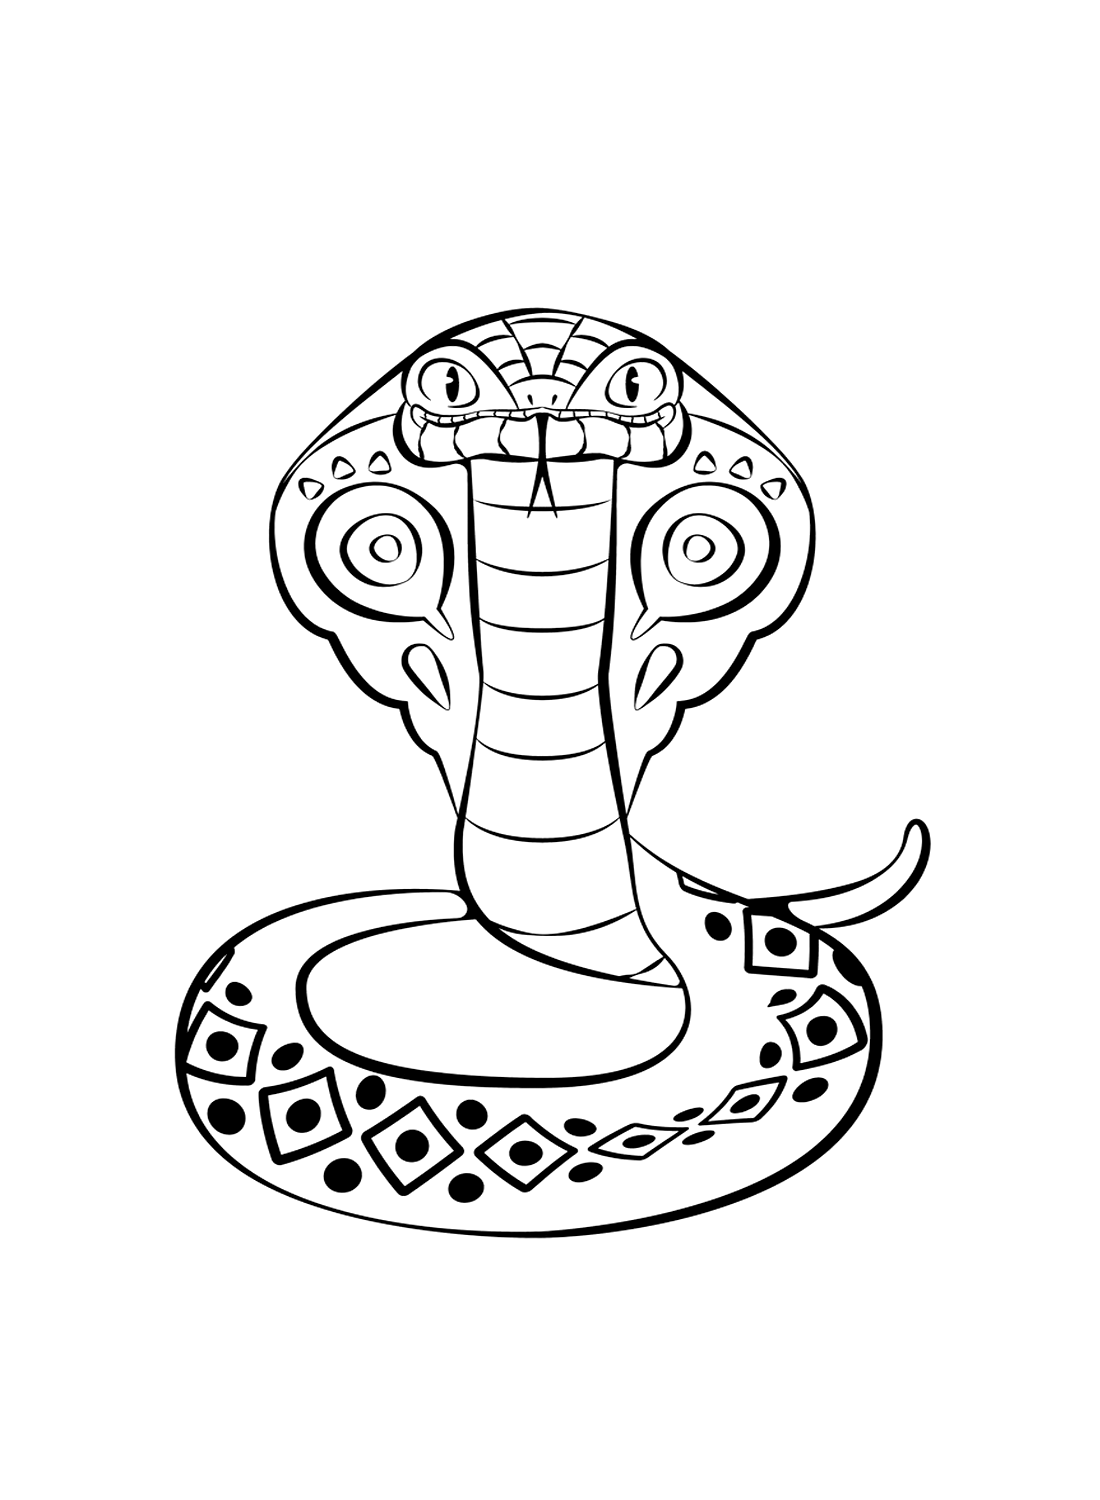 Königskobra von Cobra